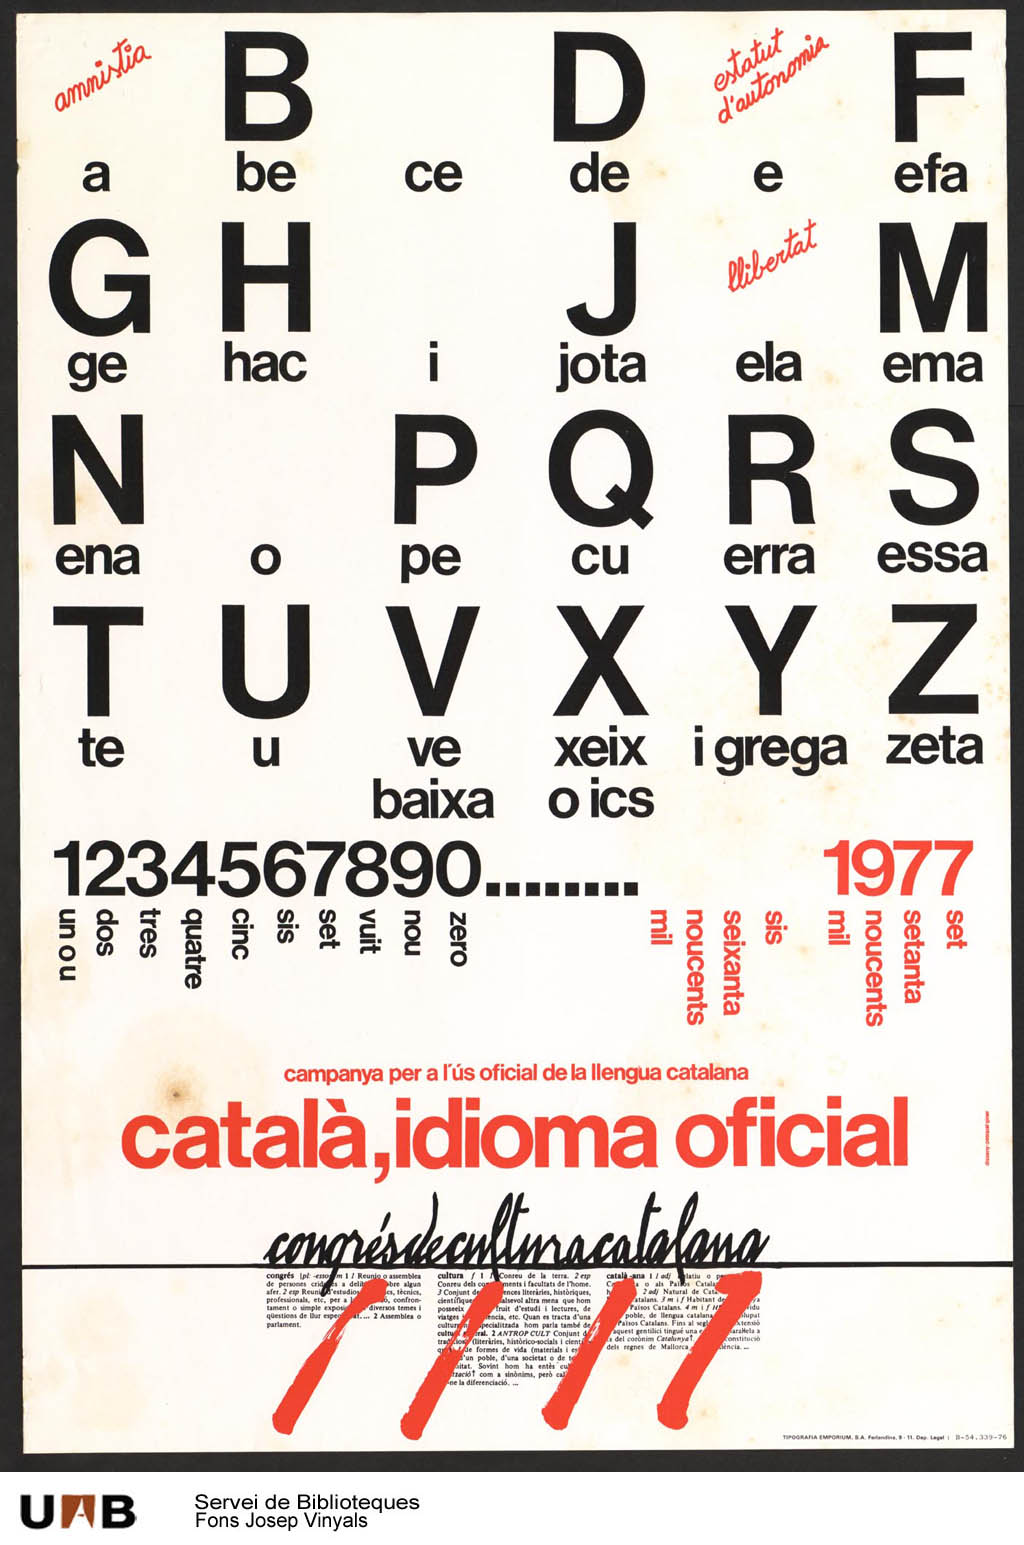 Congrés de Cultura Catalana by Josep Vinyals (1977)